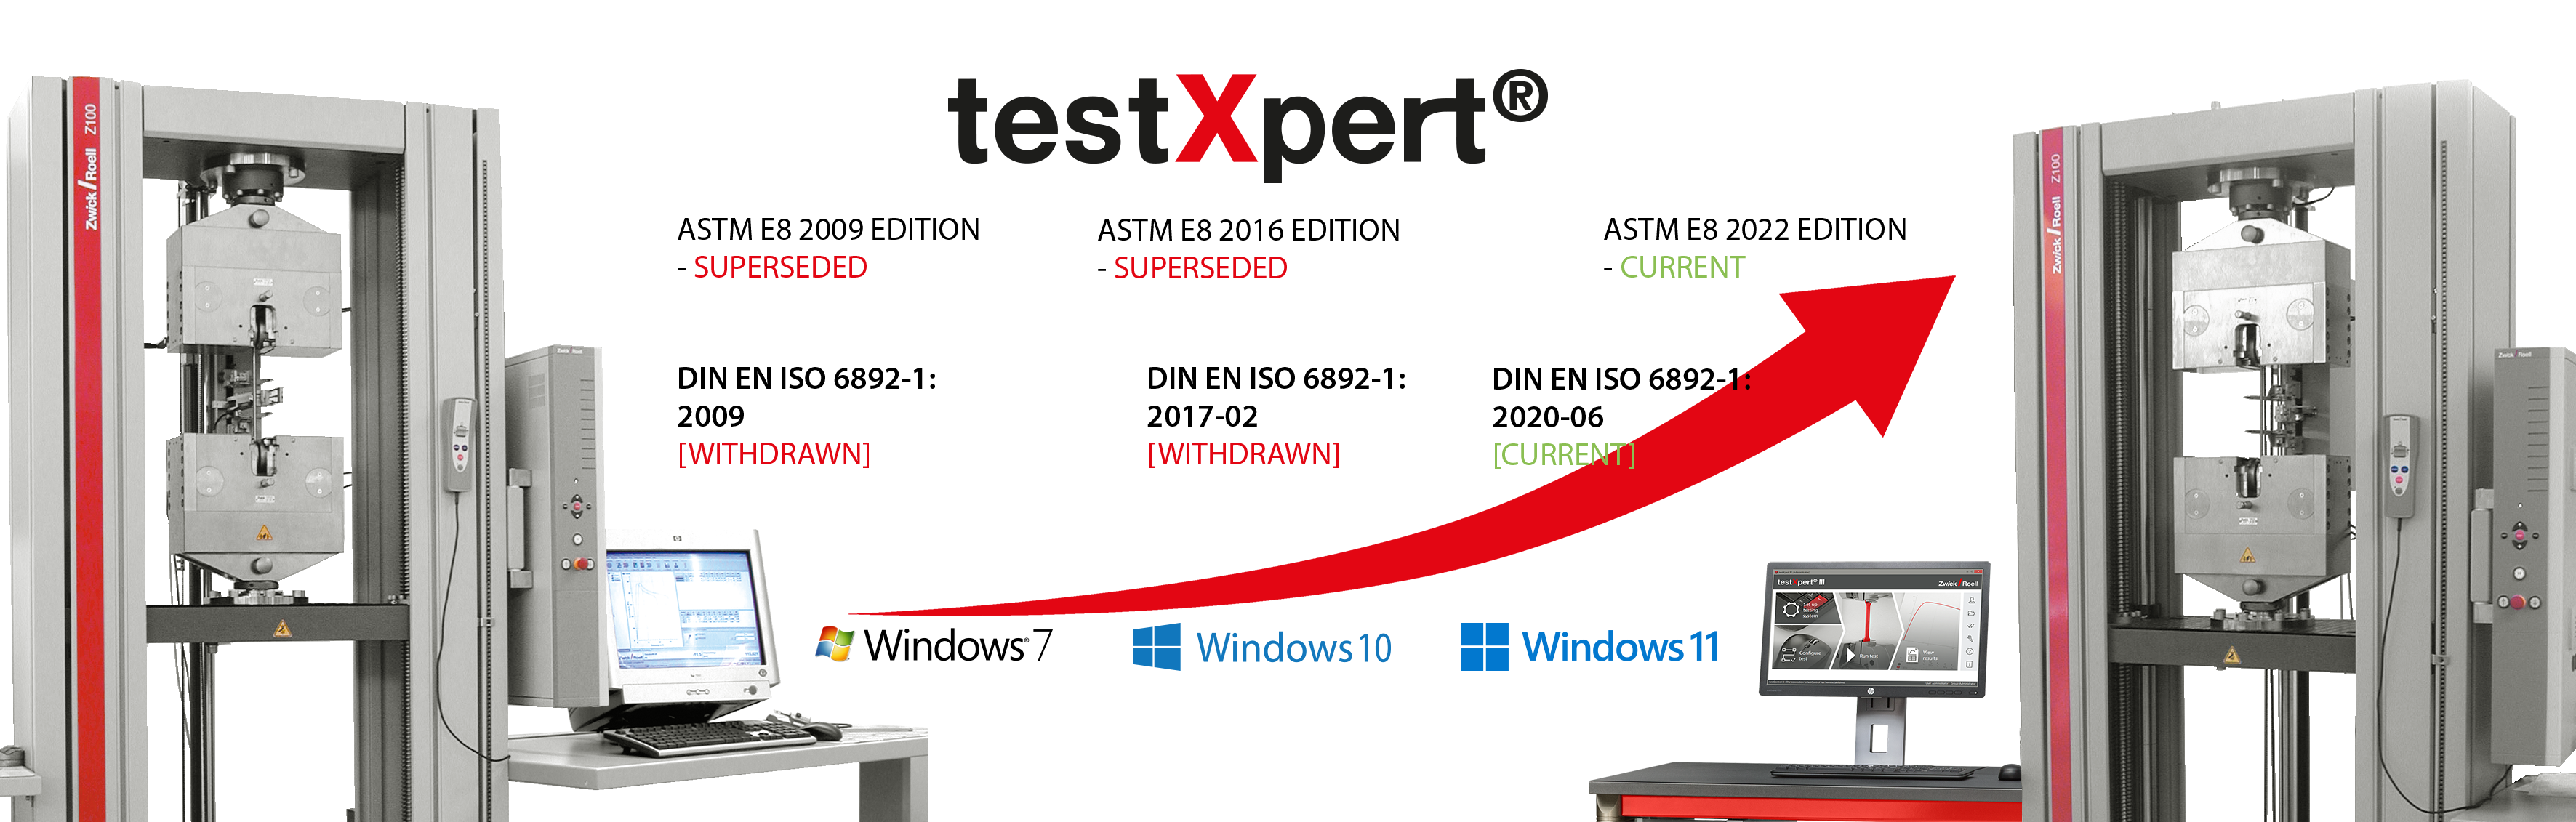 testXpert berkembang bersama Anda, baik ketika standar berubah atau sistem operasi baru diperkenalkan